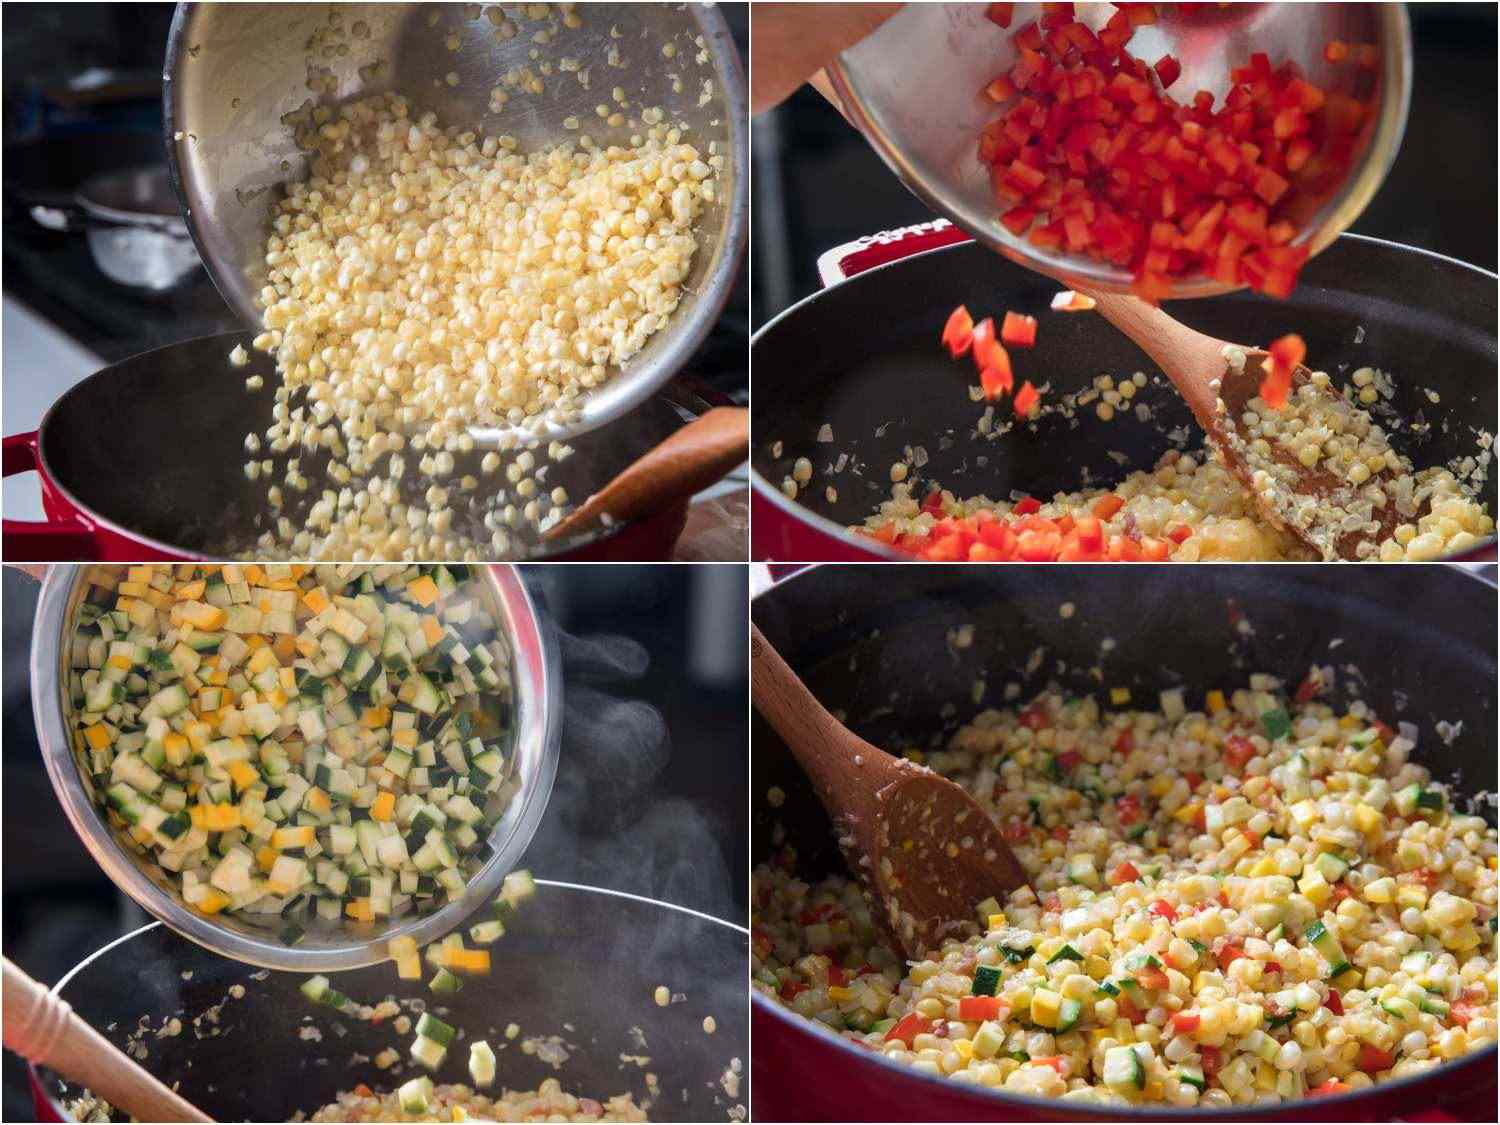 用玉米和番茄，然后把番茄混合起来，然后红椒辣椒辣椒！玉米煎饼，玉米和蔬菜，一起吃豆子